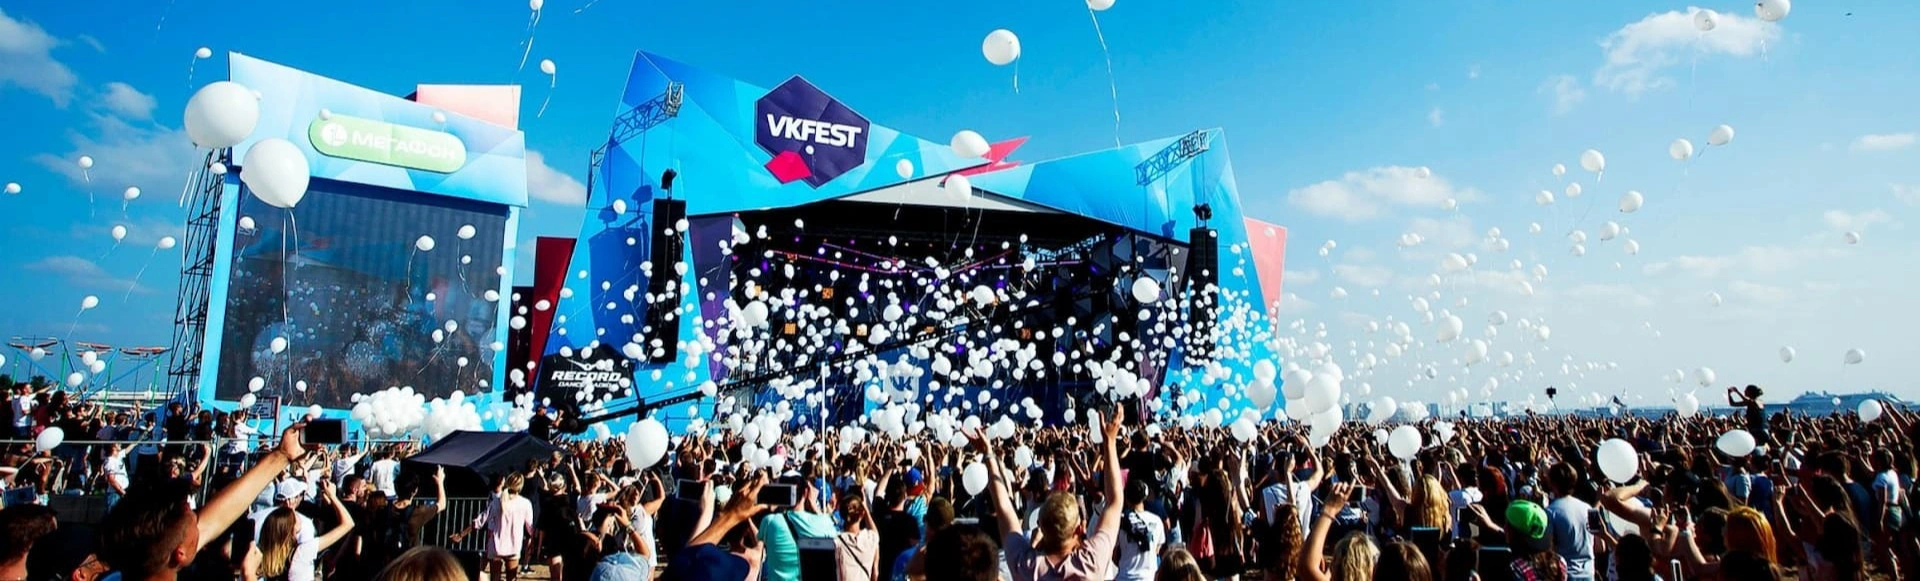 VK Fest вернется в Санкт-Петербург с более чем 50 звездными исполнителями!